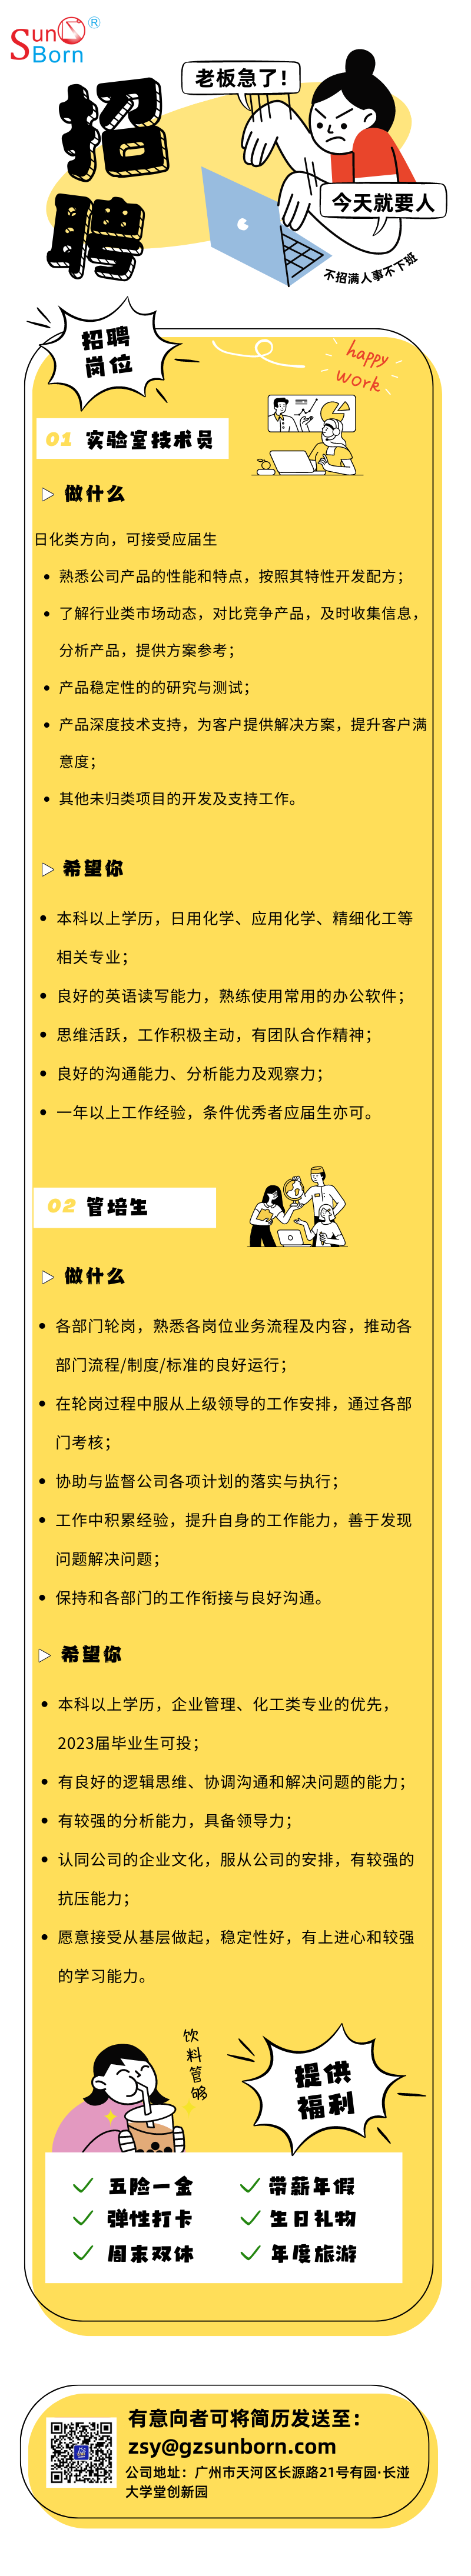 蓝黄色插画企业人才招聘宣传长图 (3)